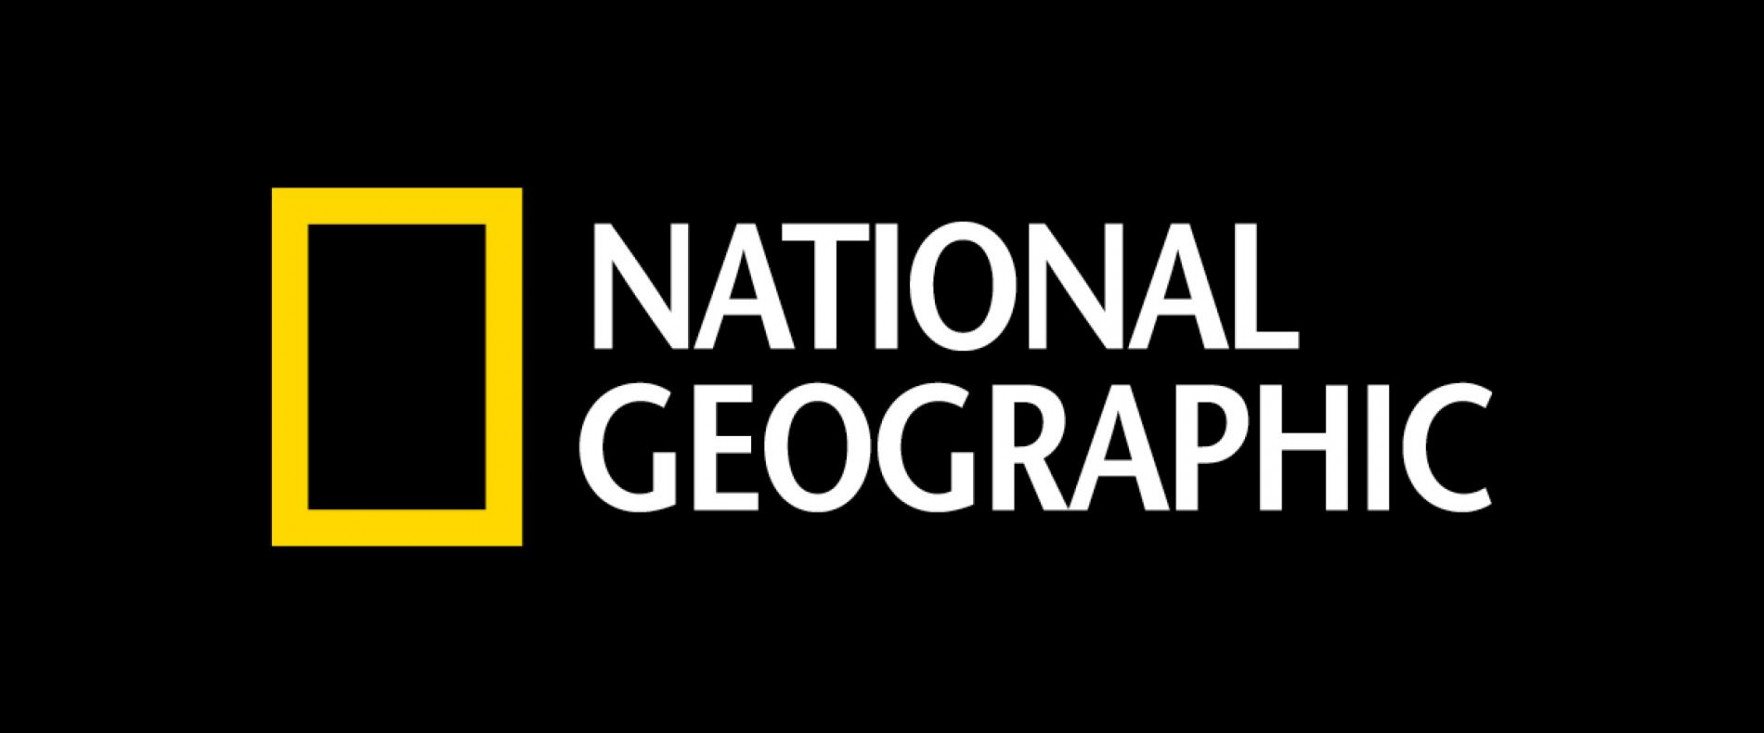 Apa yang Bisa Kita Pelajari dari National Geographic sebagai Penguasa Social Video?